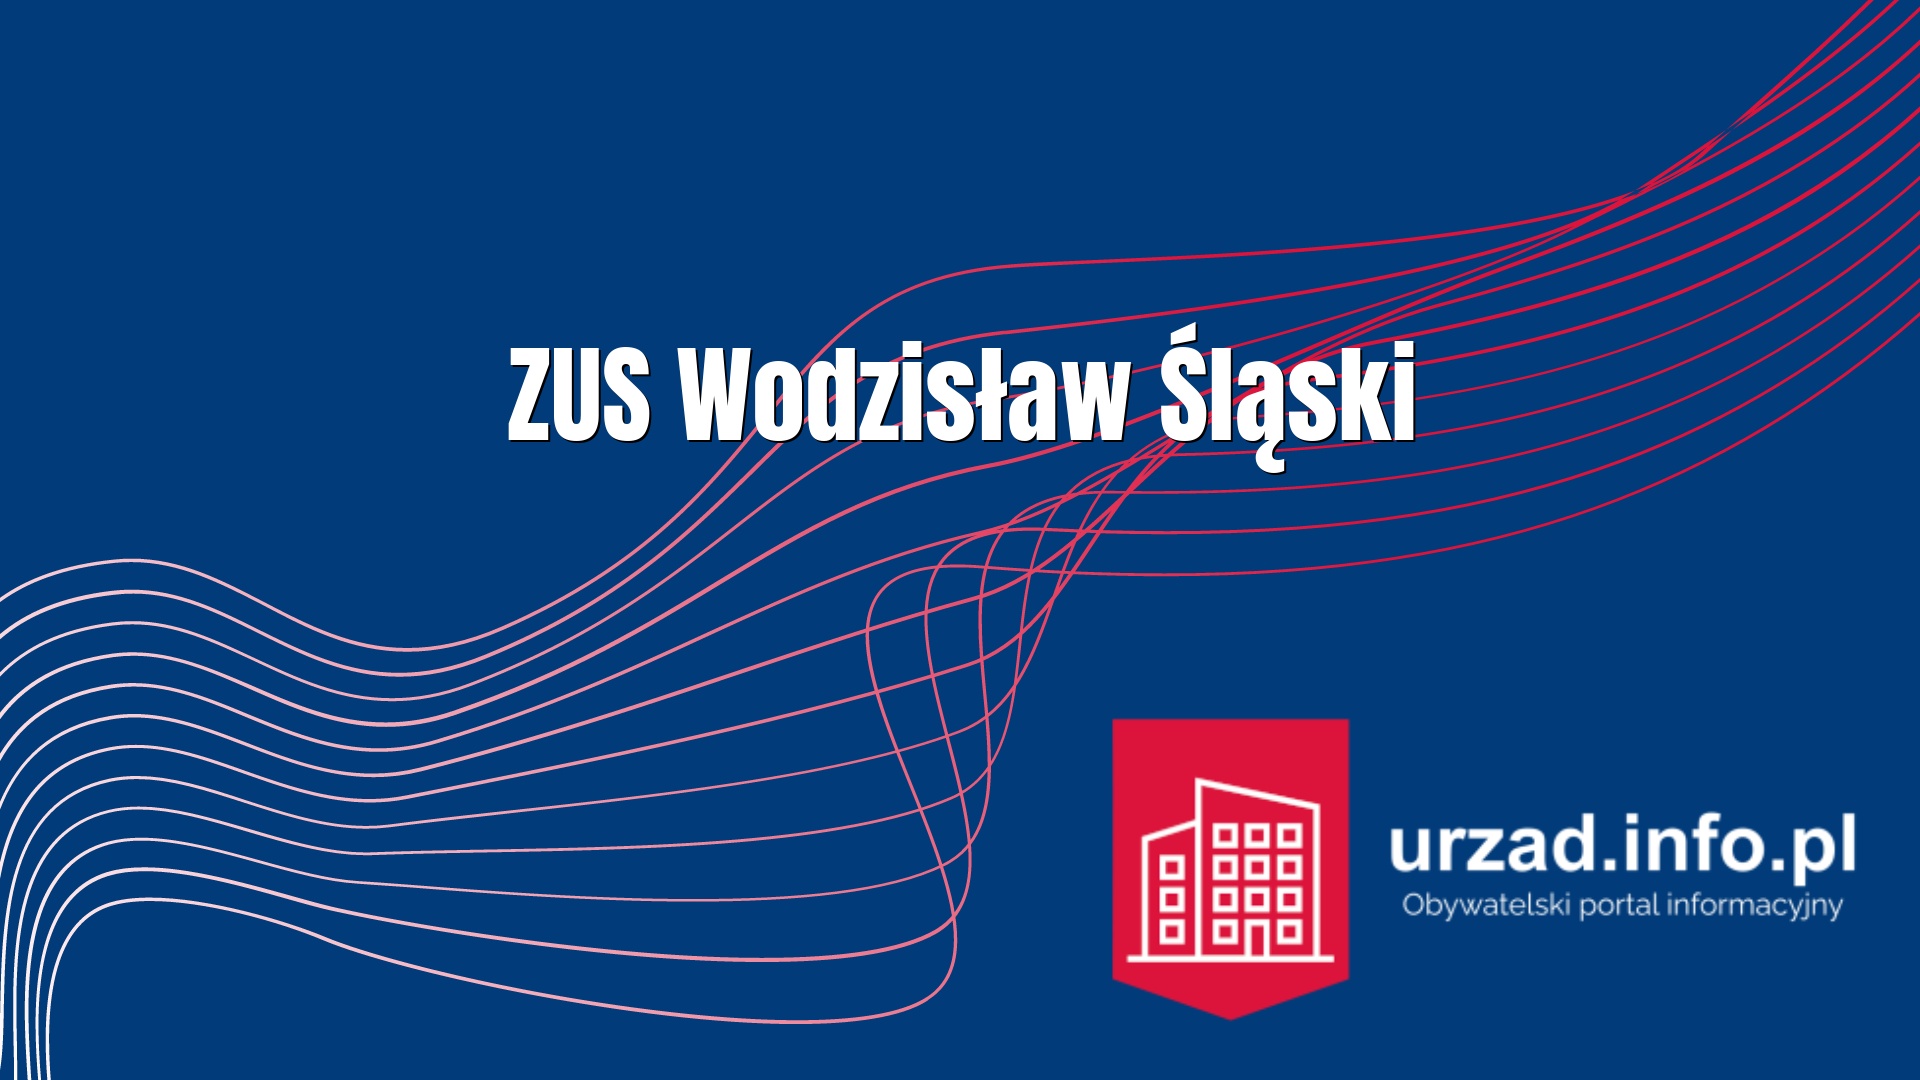 ZUS Wodzisław Śląski - Zakład Ubezpieczeń Społecznych Inspektorat w Wodzisławiu Śląskim